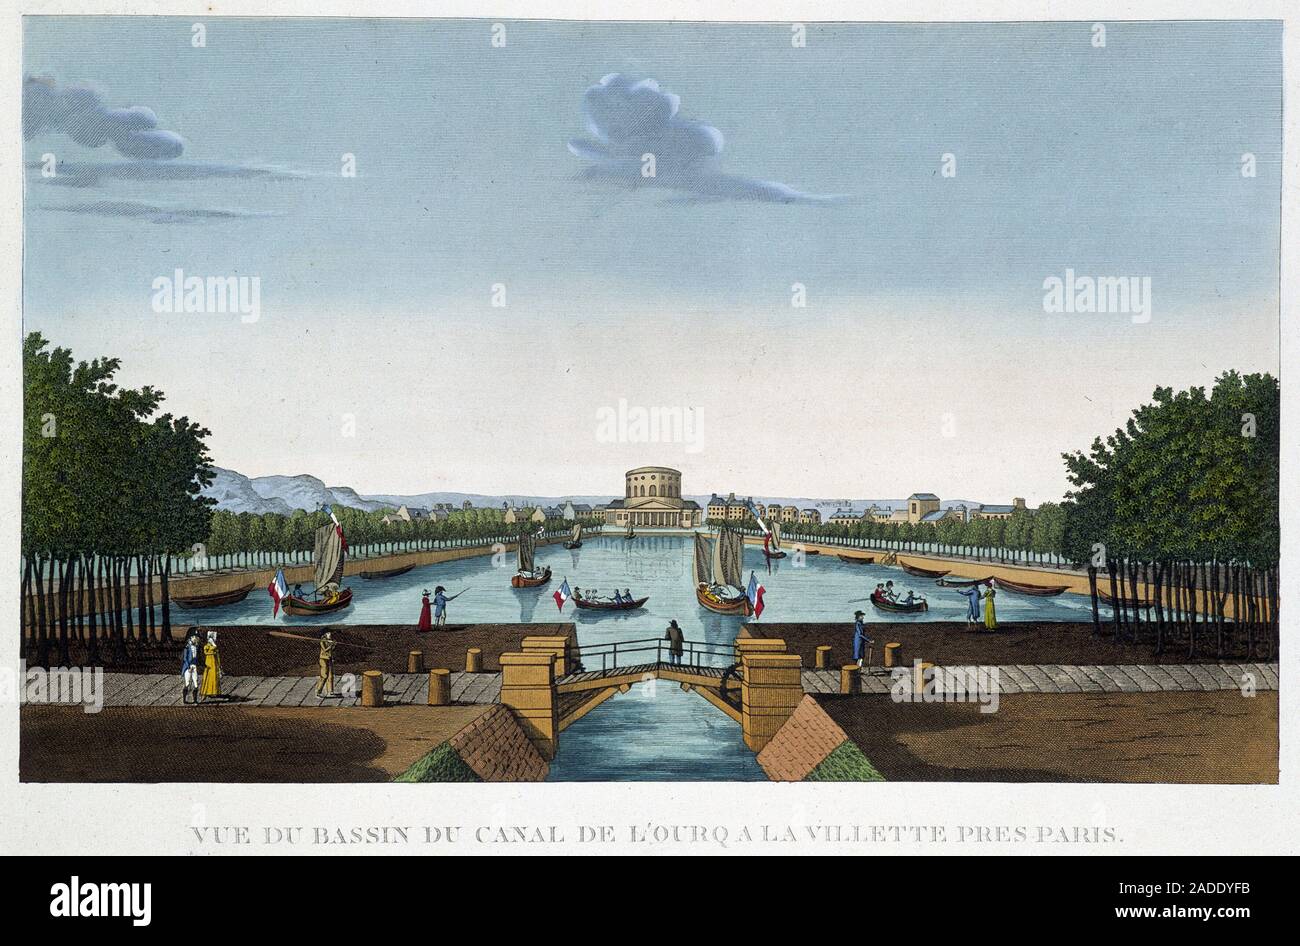 Canal de l'Ourcq a la Villette - in "Vues de Paris" par Courvoisier, 1827 Stock Photo